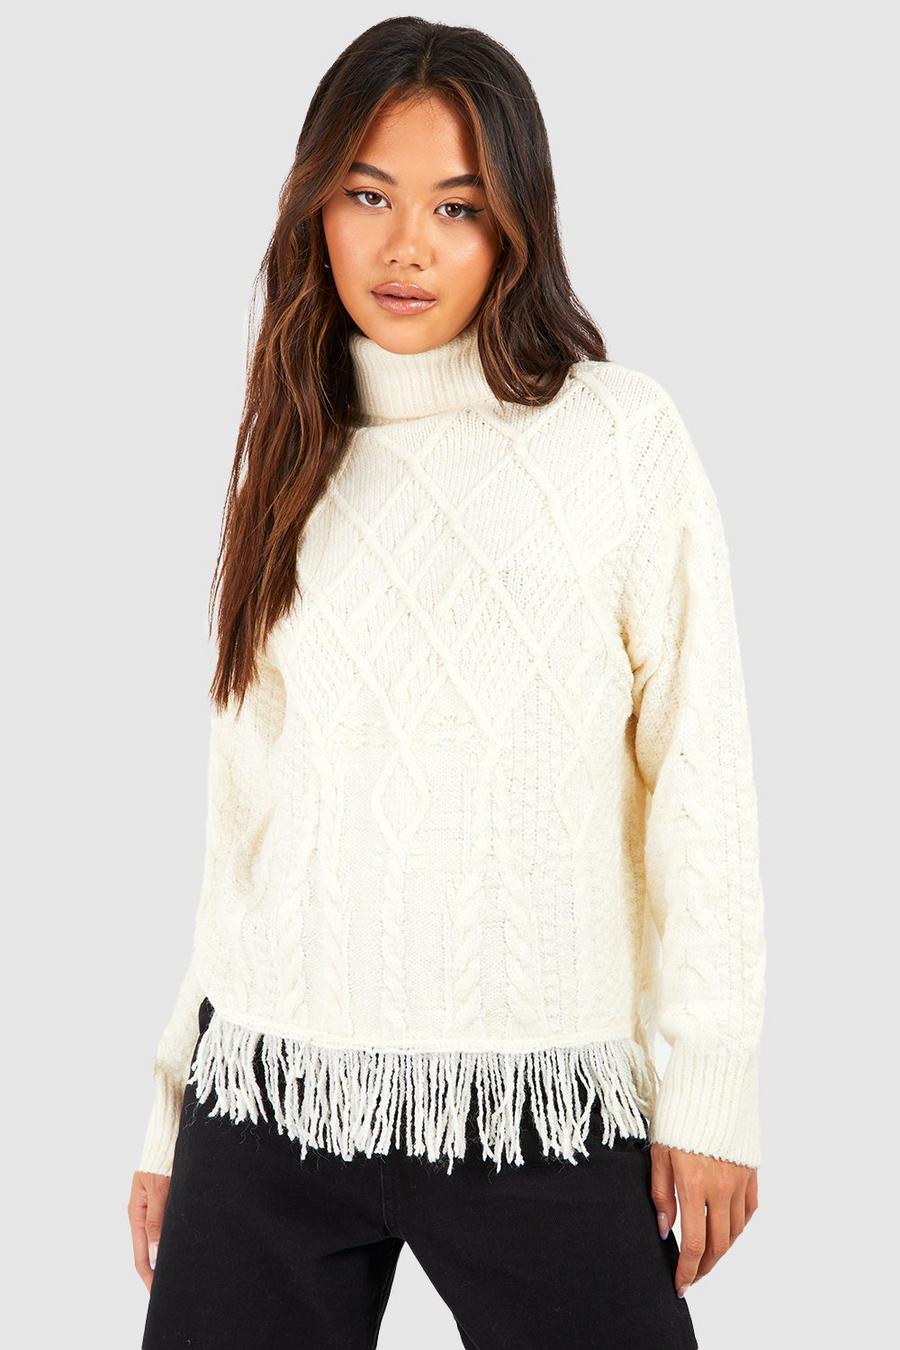 Maglione in maglia intrecciata con frange sul fondo, Ivory